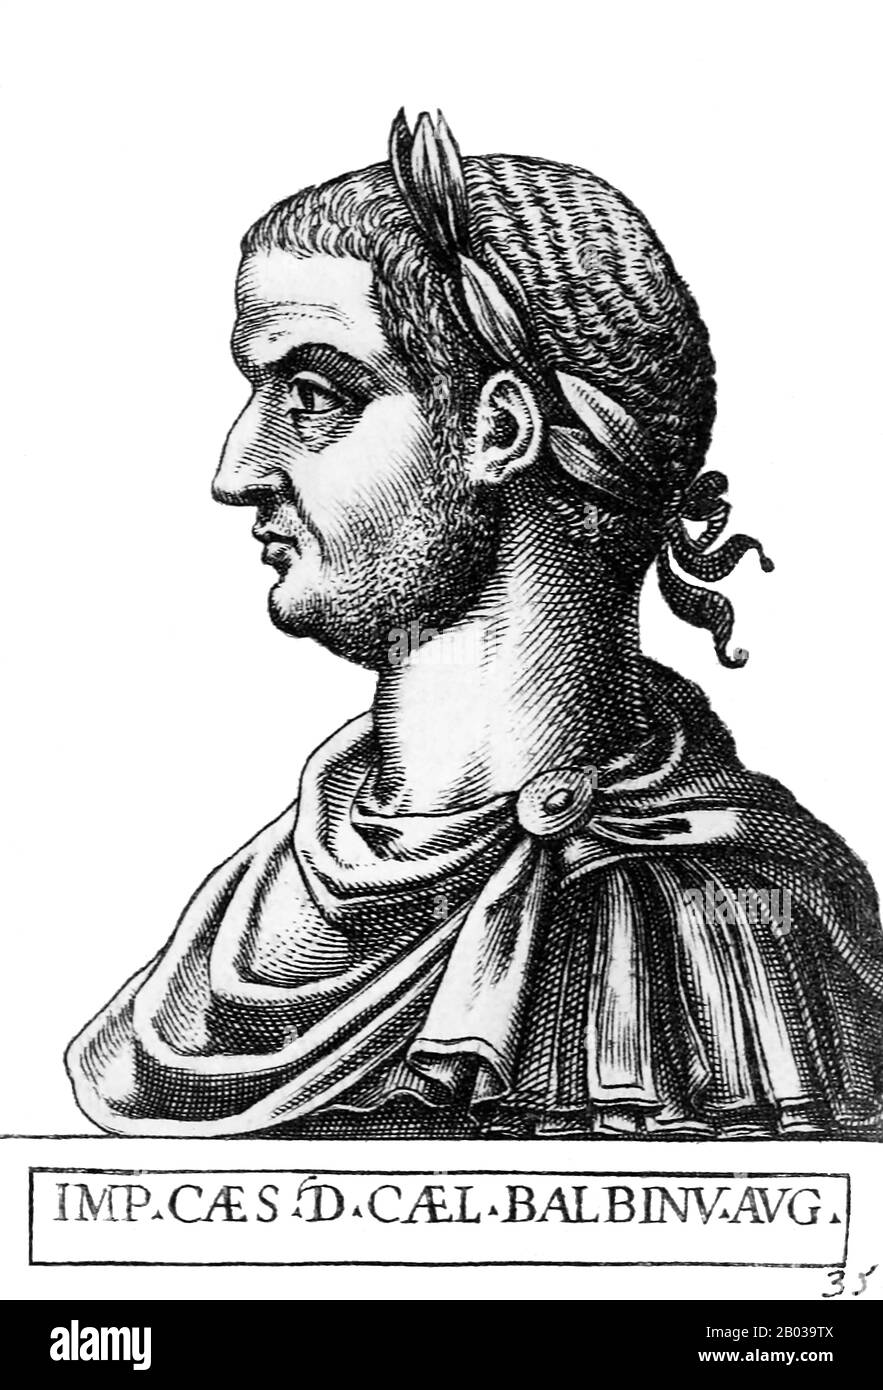 Balbinus (178-238) war wie sein möglicher Mitkaiser Pupienus Senator und Politicus des römischen Imperiums. Über Balbinus sind vor seinem himmelreich zum gemeinsamen Kaiser nur wenig Informationen bekannt, aber es ist bekannt, dass er zweimal als Konsul gedient hatte und möglicherweise mehrere Provinzen regiert hat. Nachdem der Senat die Gordianer im Jahr 238 unter Missachtung des derzeitigen Kaiser Maximinus Thrax als Mitkaiser anerkannt hatte, wurde Balbinus in ein Komitee neben Pupienus berufen, um zu versuchen, Operationen agaisnt Maximinus zu koordinieren, bis die Gordianer in Rom eintreffen konnten. Die Gordianer starben weniger als einen Monat nach dem Stockfoto